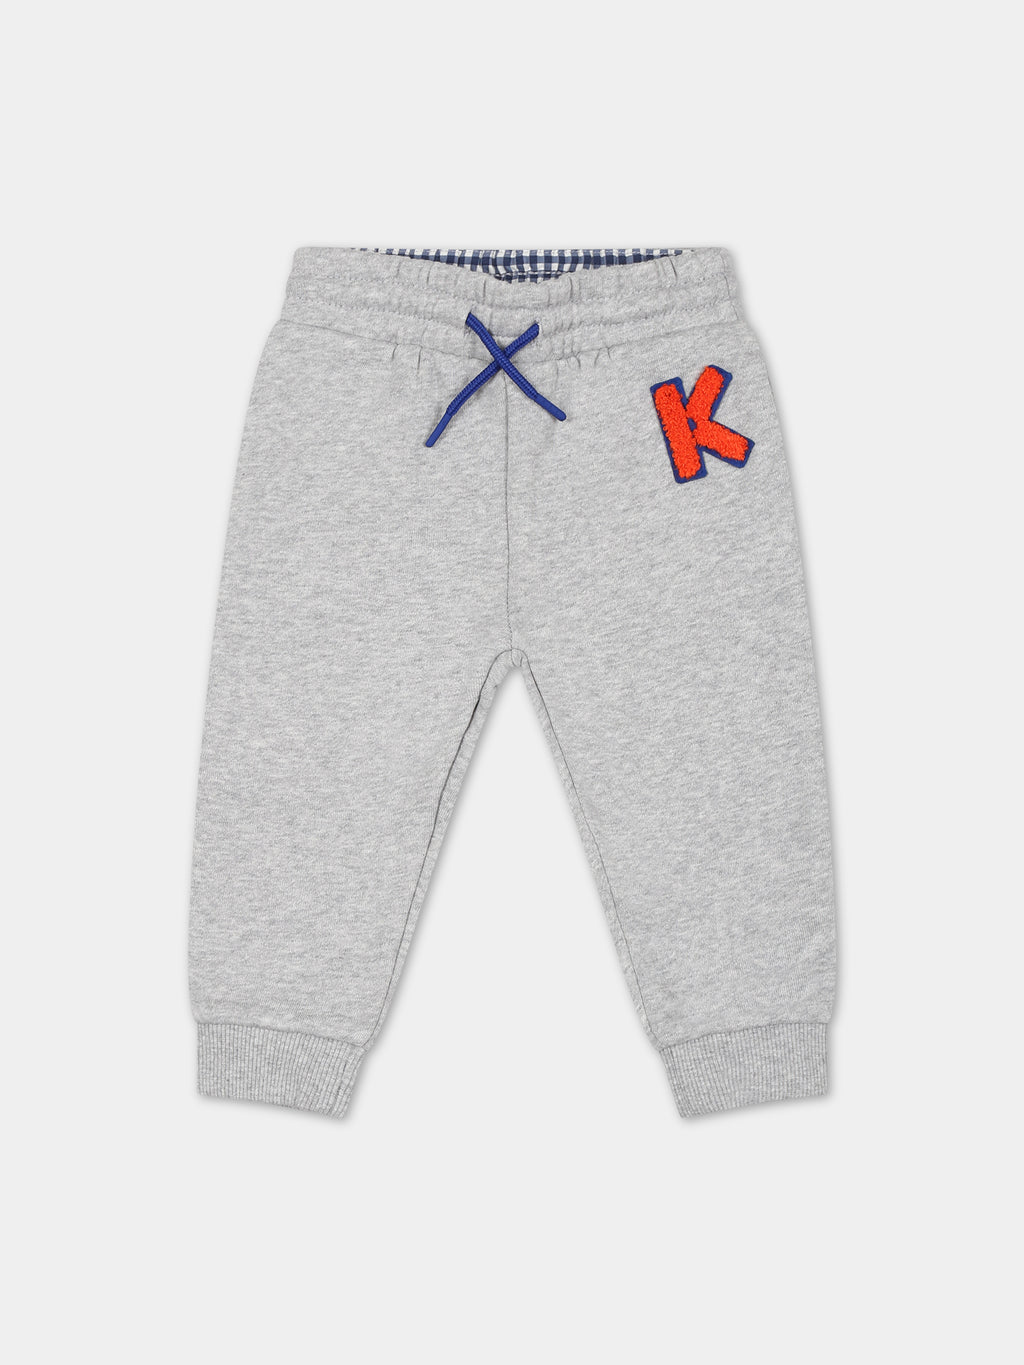 Pantalon gris pour bébé garçon avec logo